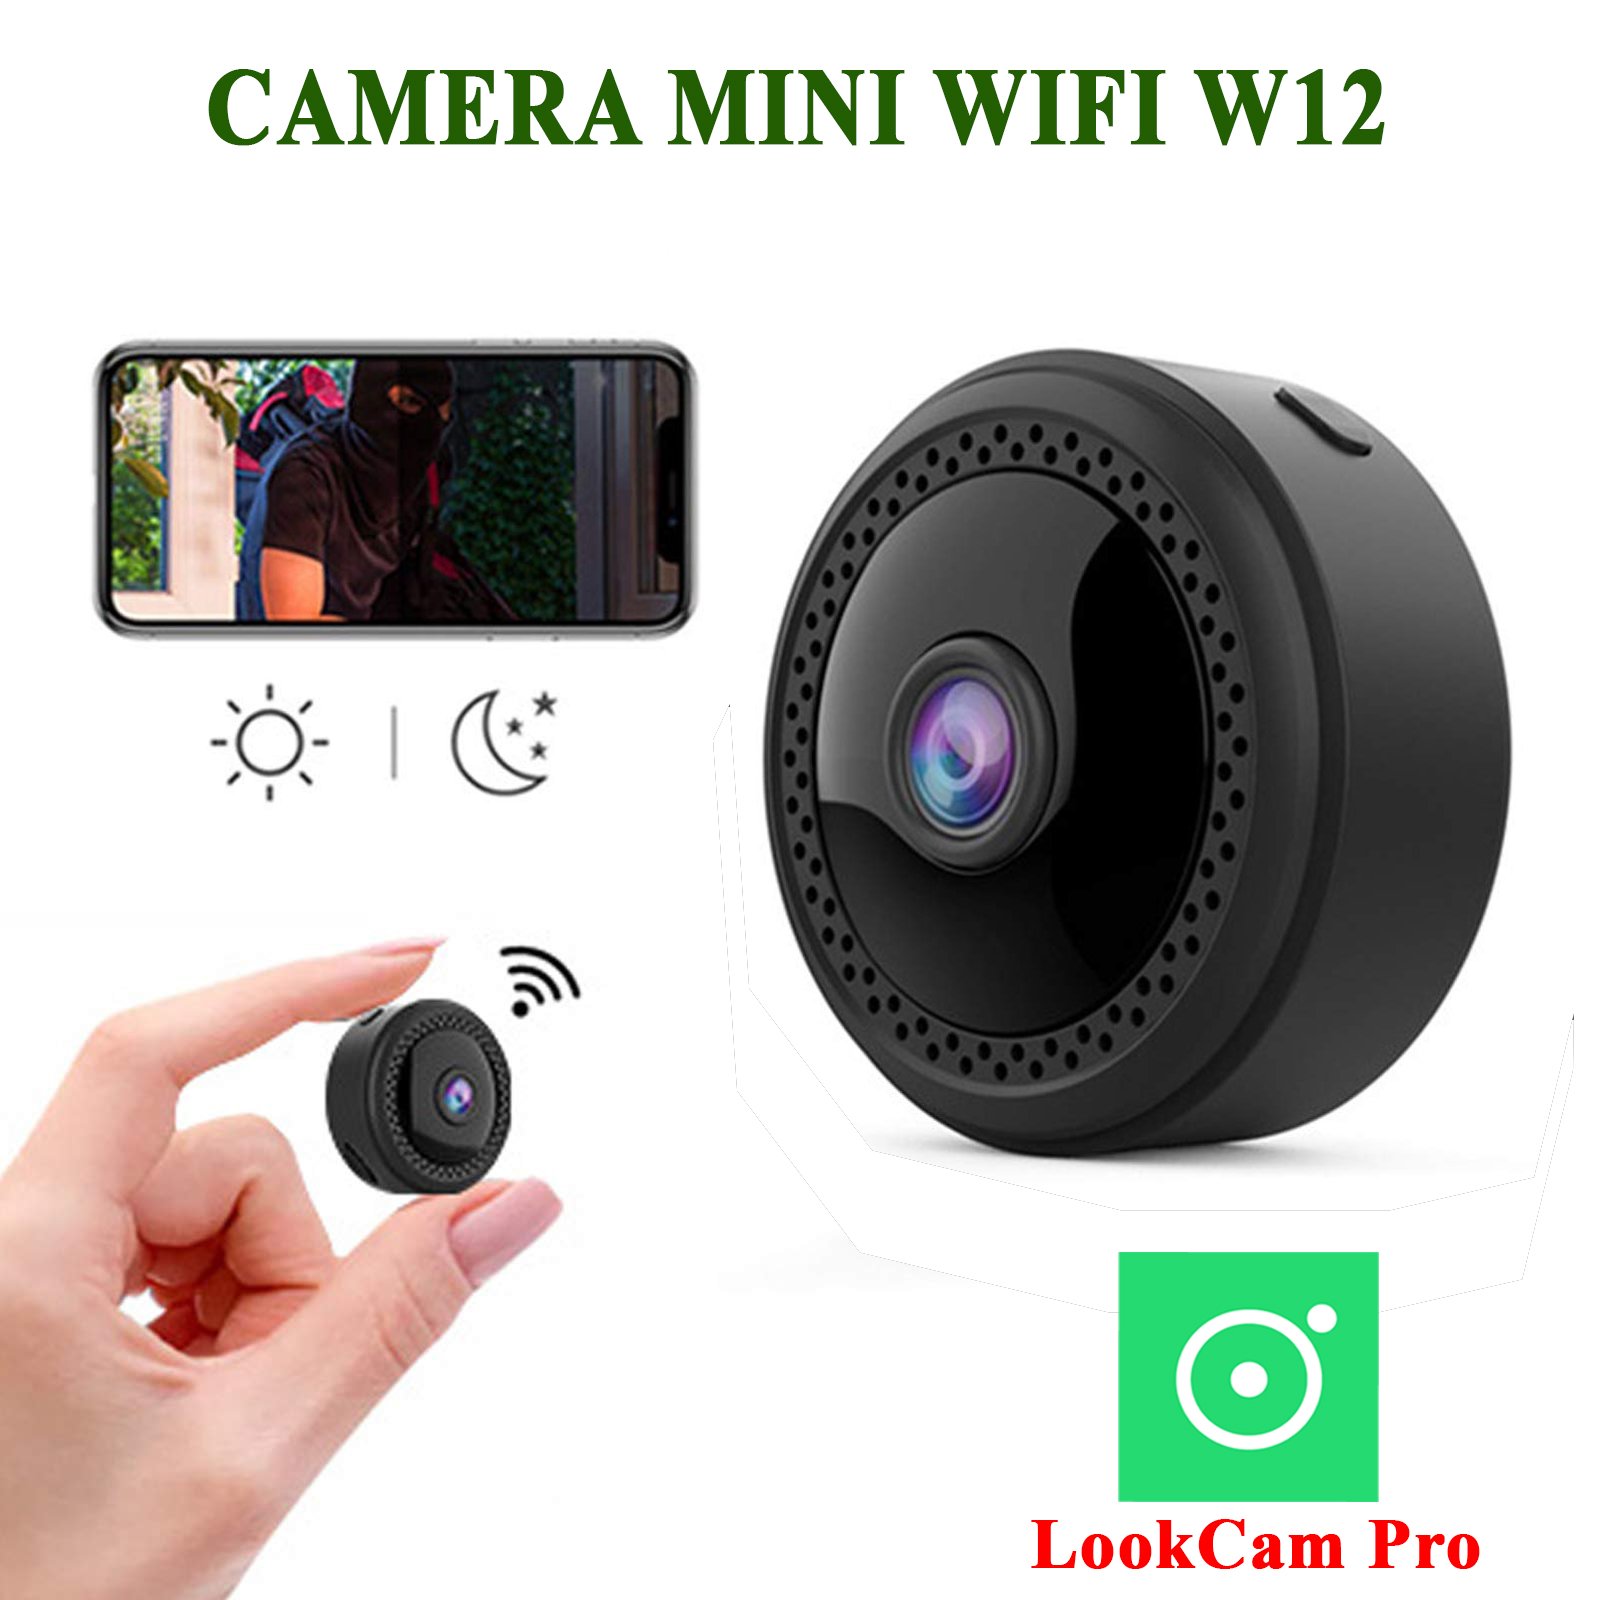 Camera mini Wifi W12 FullHD 1080p giám sát, hồng ngoại quay ban đêm